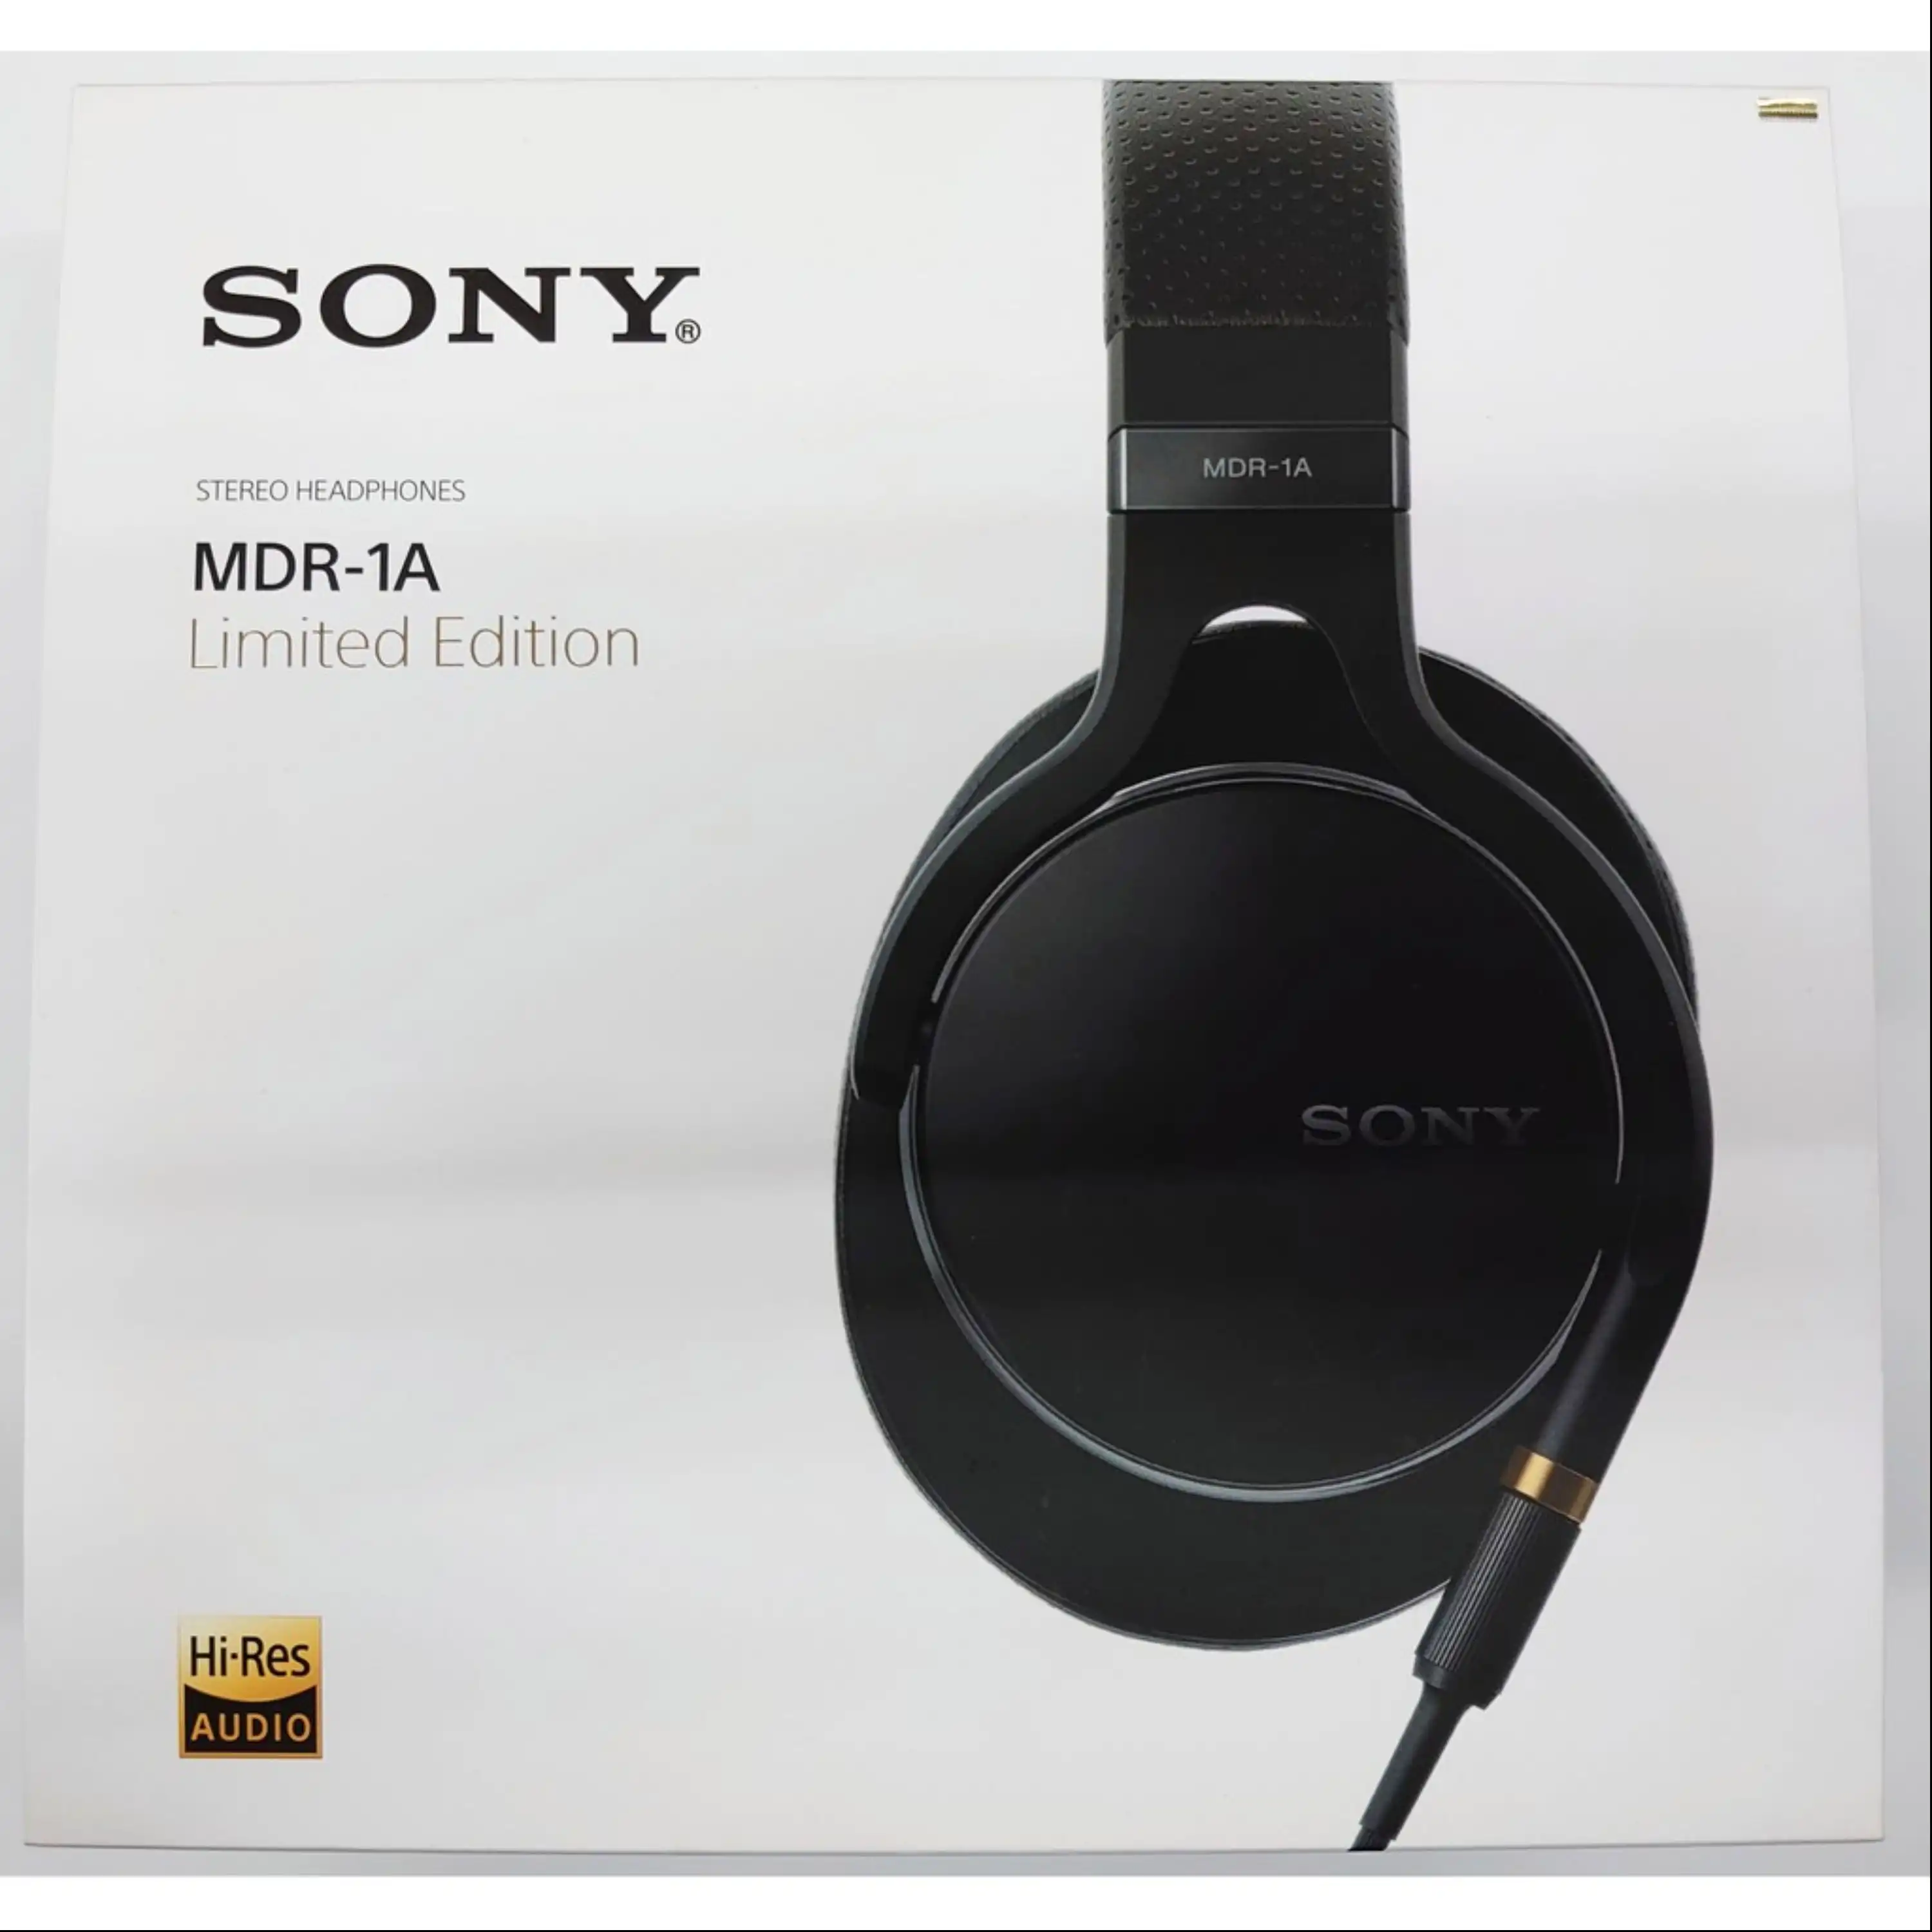  هدفون اورجینال سونی Sony MDR-1A Limited Edition (لیمیتد ادیشن)